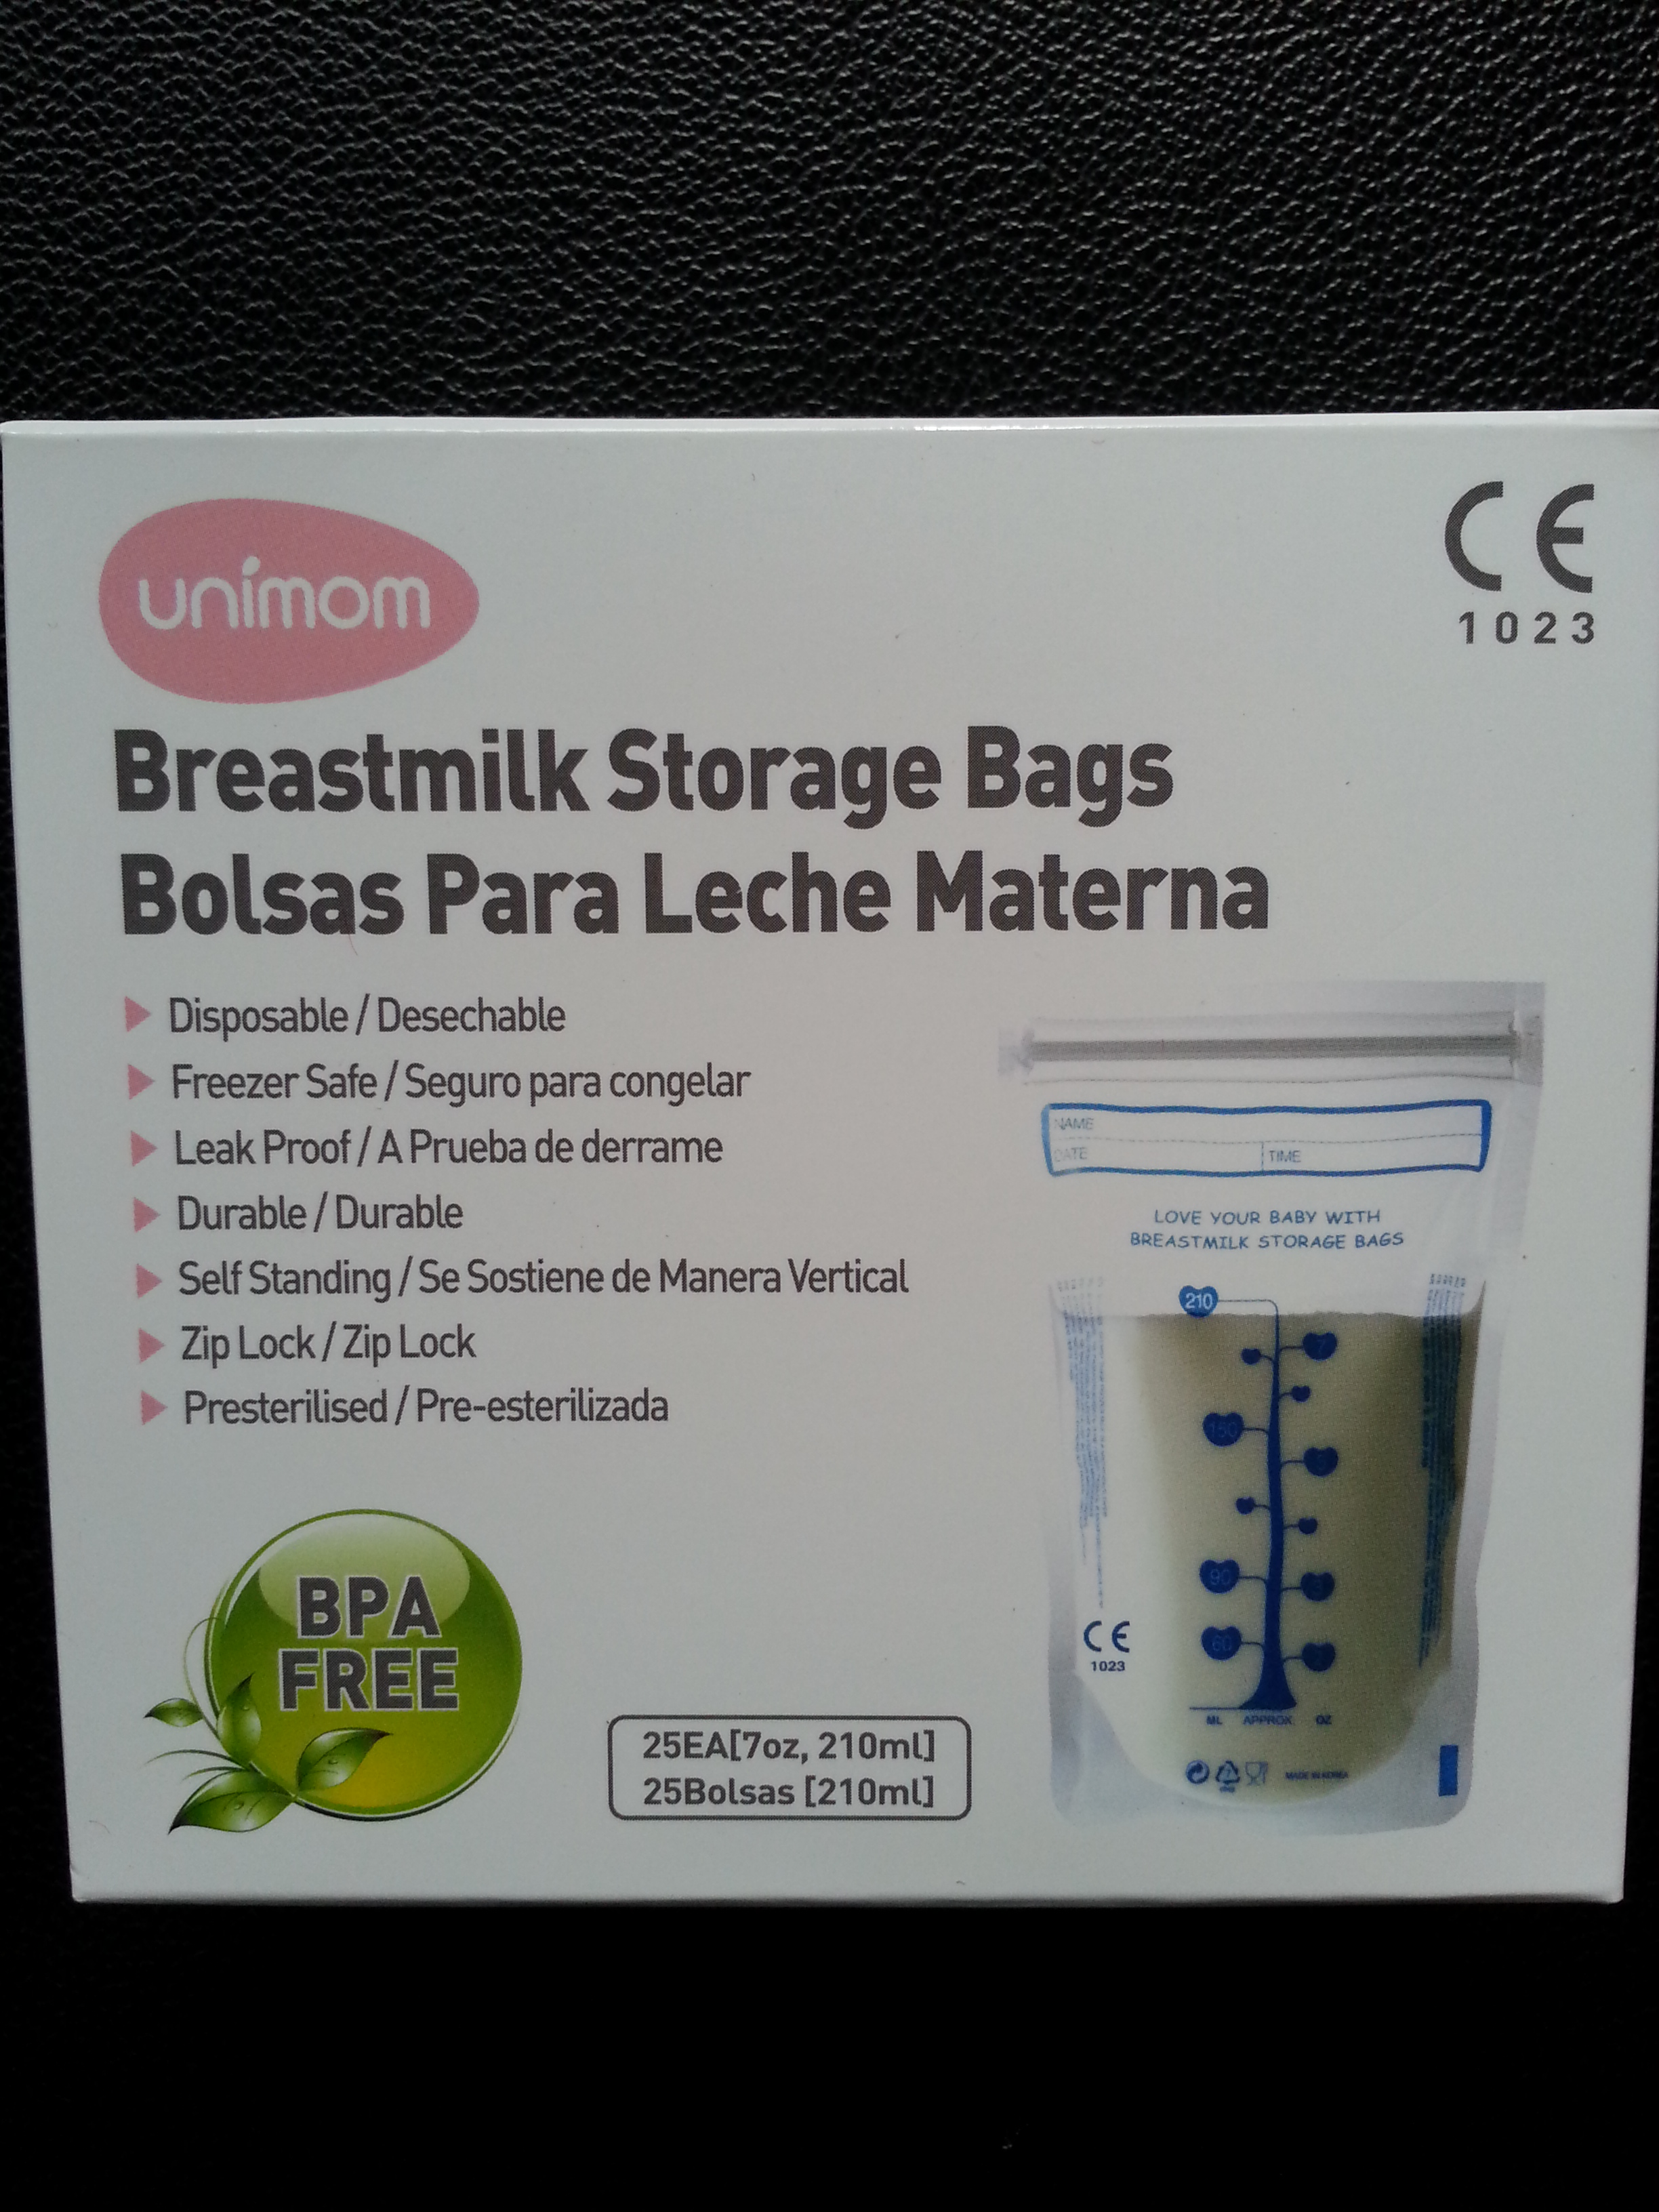 Unimom_BM Storage bags.jpg